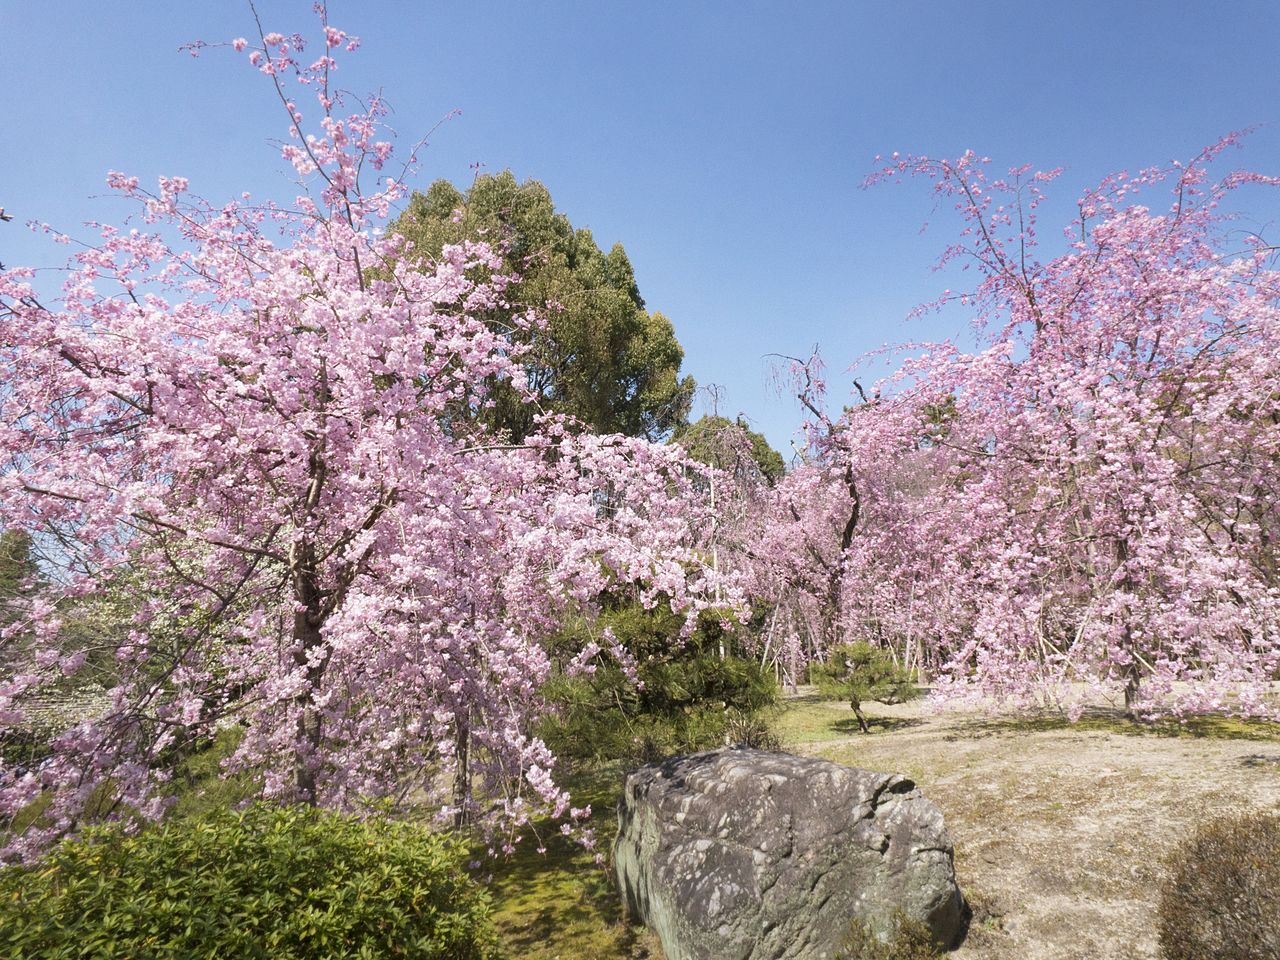 神苑里的樱树以八重红枝垂樱为主,约有150棵